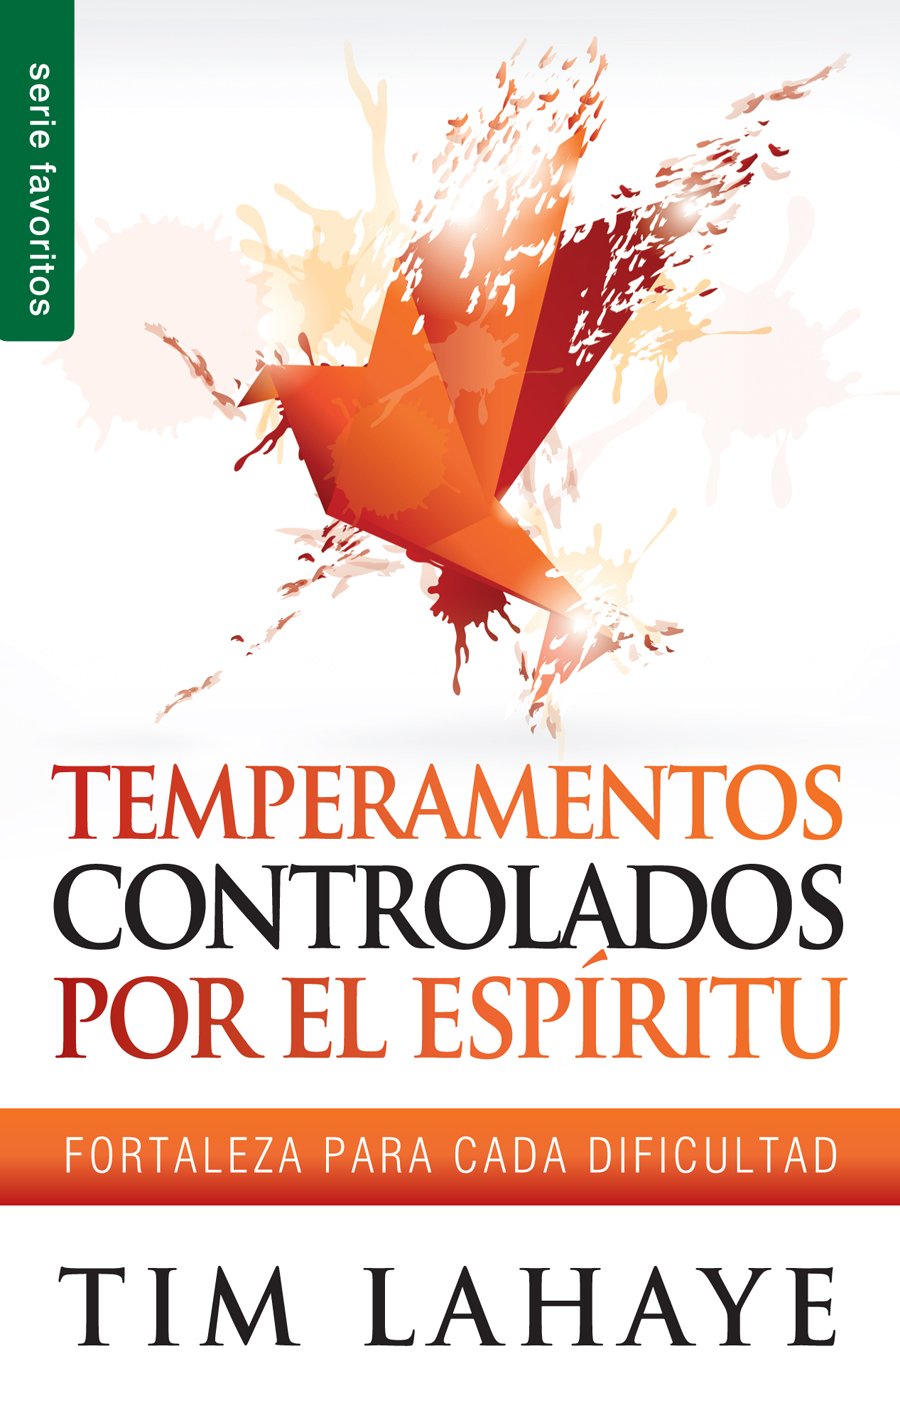 Temperamentos controladors por el Espíritu by Tim Lahaye -Editorial Unilit